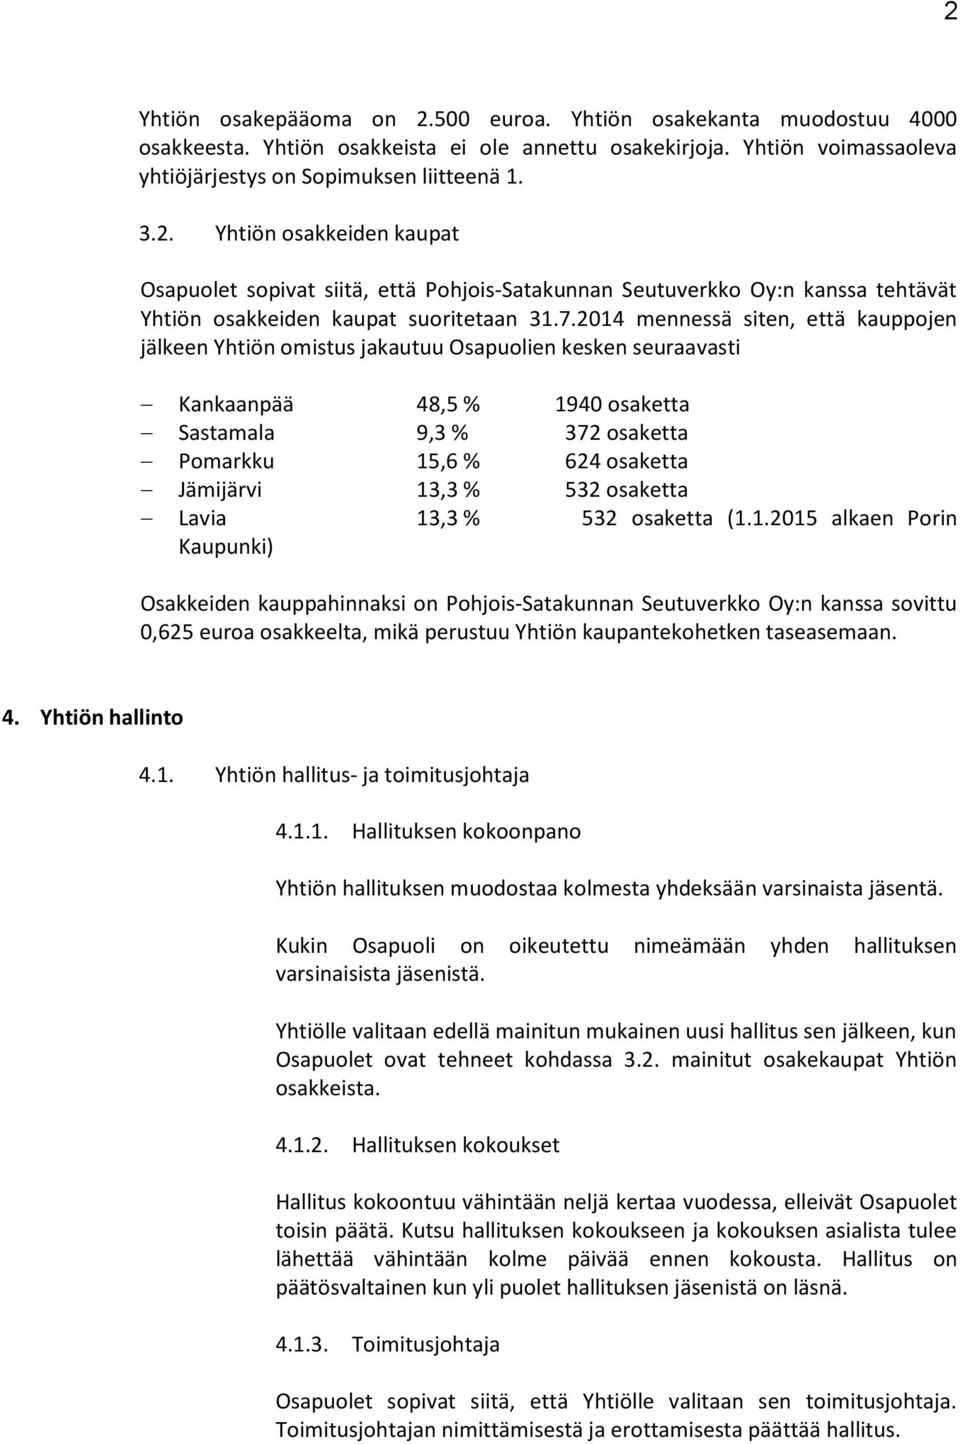 13,3 % 532 osaketta Lavia 13,3 % 532 osaketta (1.1.2015 alkaen Porin Kaupunki) Osakkeiden kauppahinnaksi on Pohjois-Satakunnan Seutuverkko Oy:n kanssa sovittu 0,625 euroa osakkeelta, mikä perustuu Yhtiön kaupantekohetken taseasemaan.